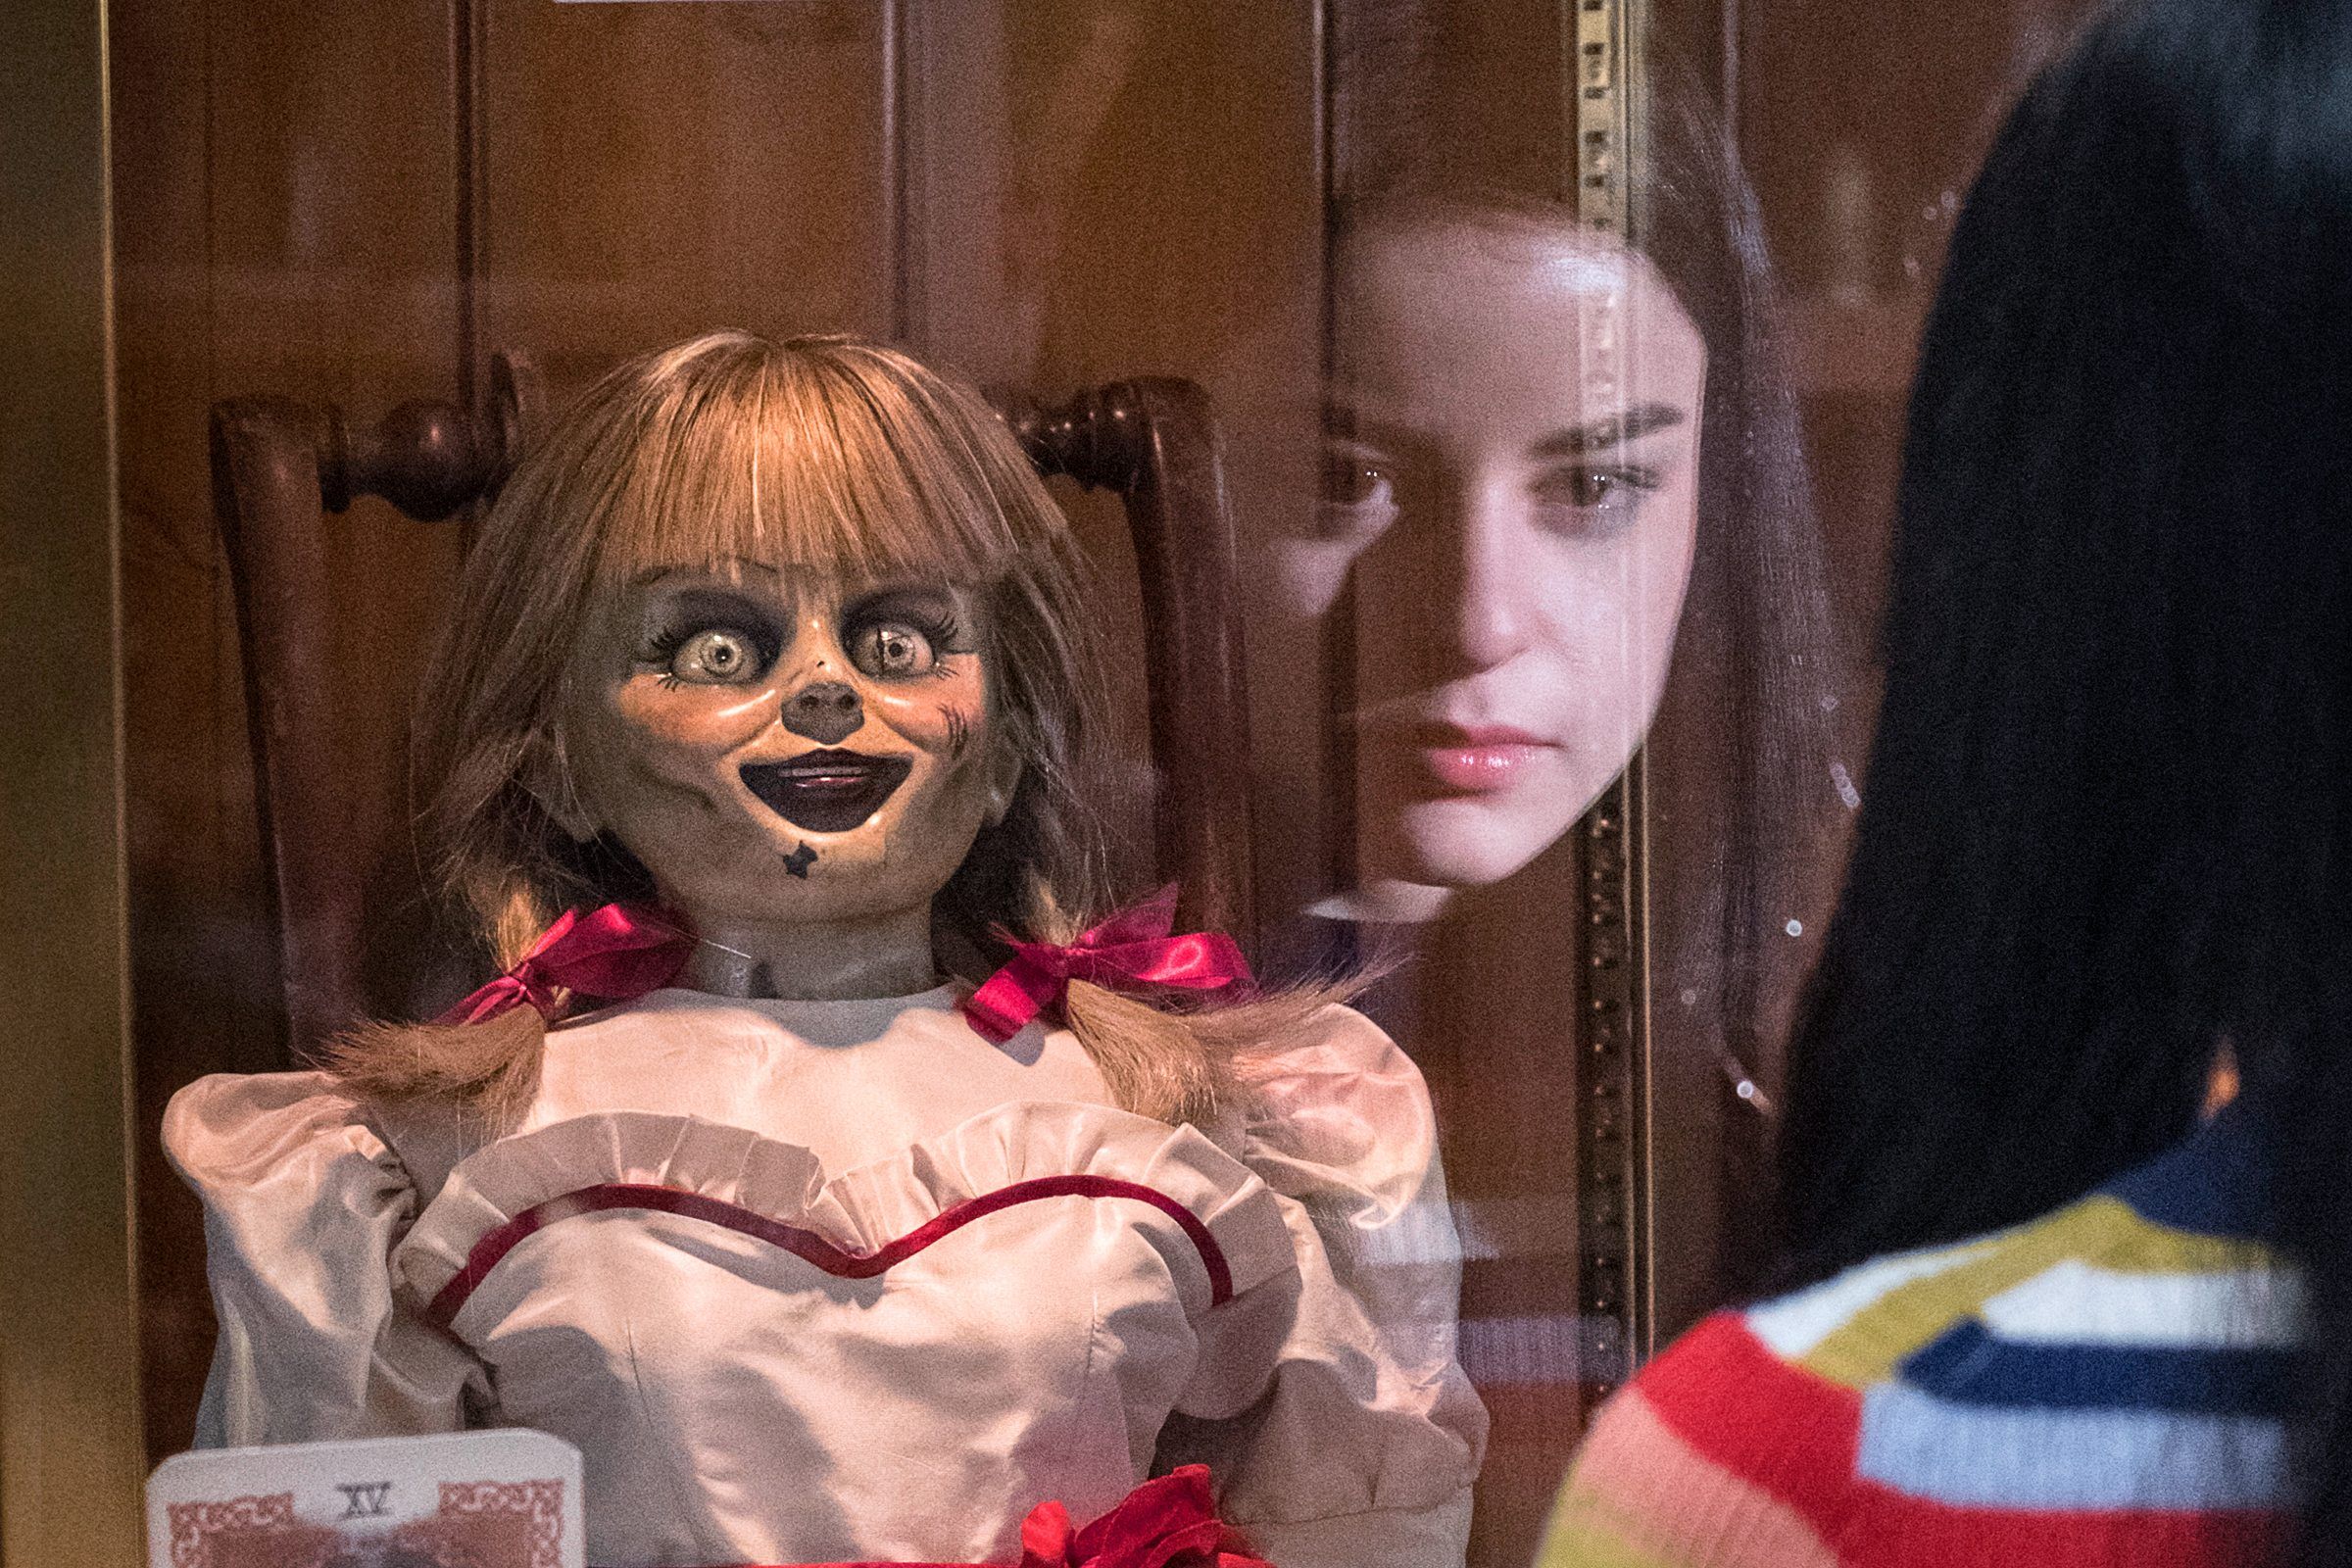 Wann kommt Annabelle Comes Home in die Kinos? Besetzung, Handlung, Trailer und wie es zu The Conjuring passt